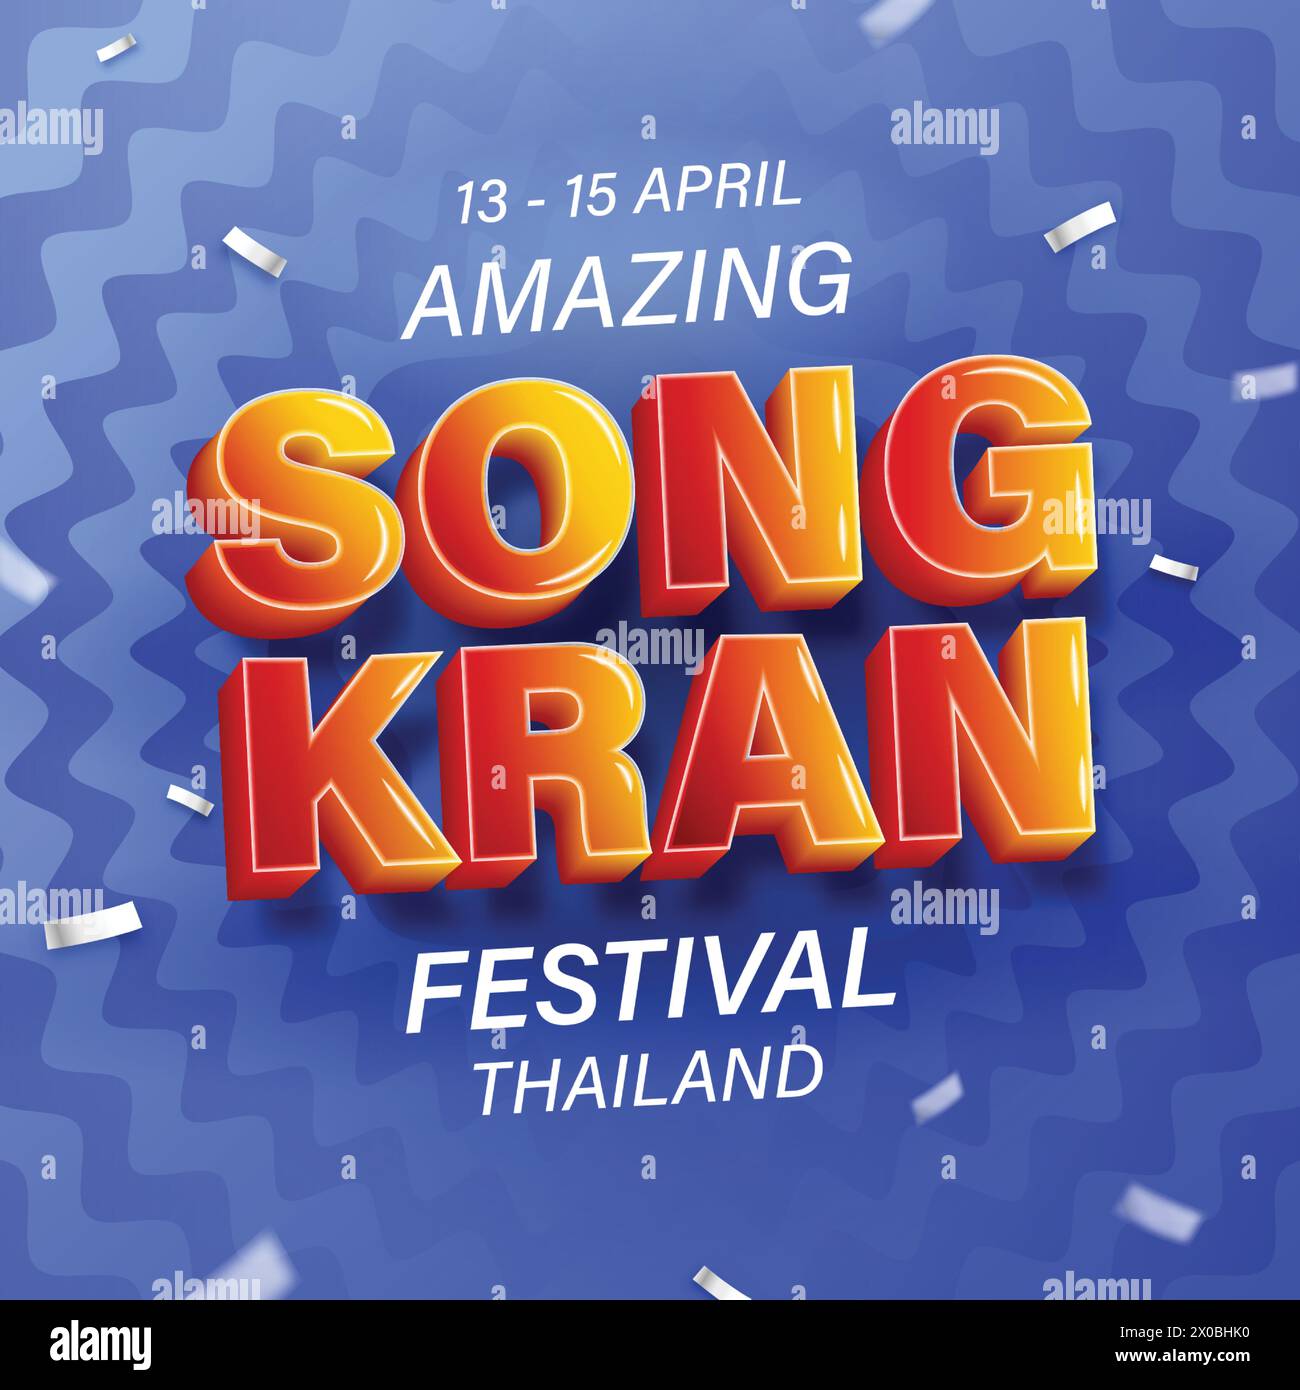 Incroyable Songkran festival Thaïlande conception d'affiche dans le fond ondulé de l'eau bleue, illustration vectorielle Illustration de Vecteur